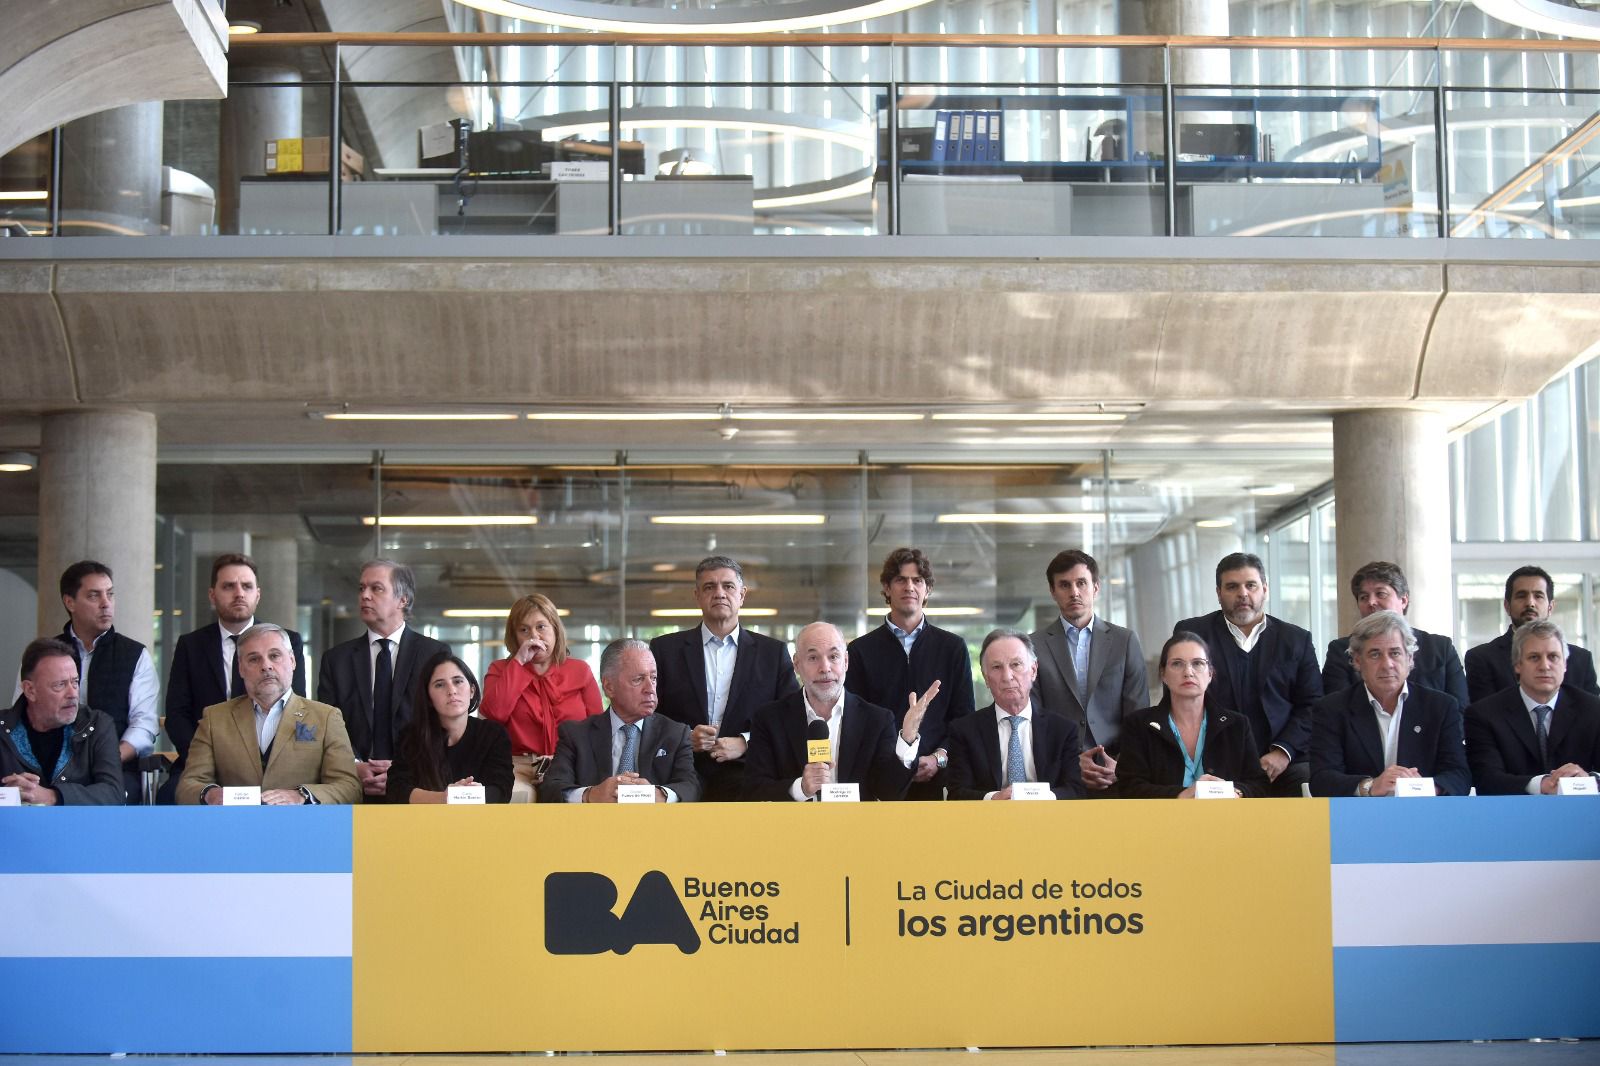 Por iniciativa de Rodríguez Larreta, la Legislatura aprobó una baja de impuestos para impulsar la actividad económica